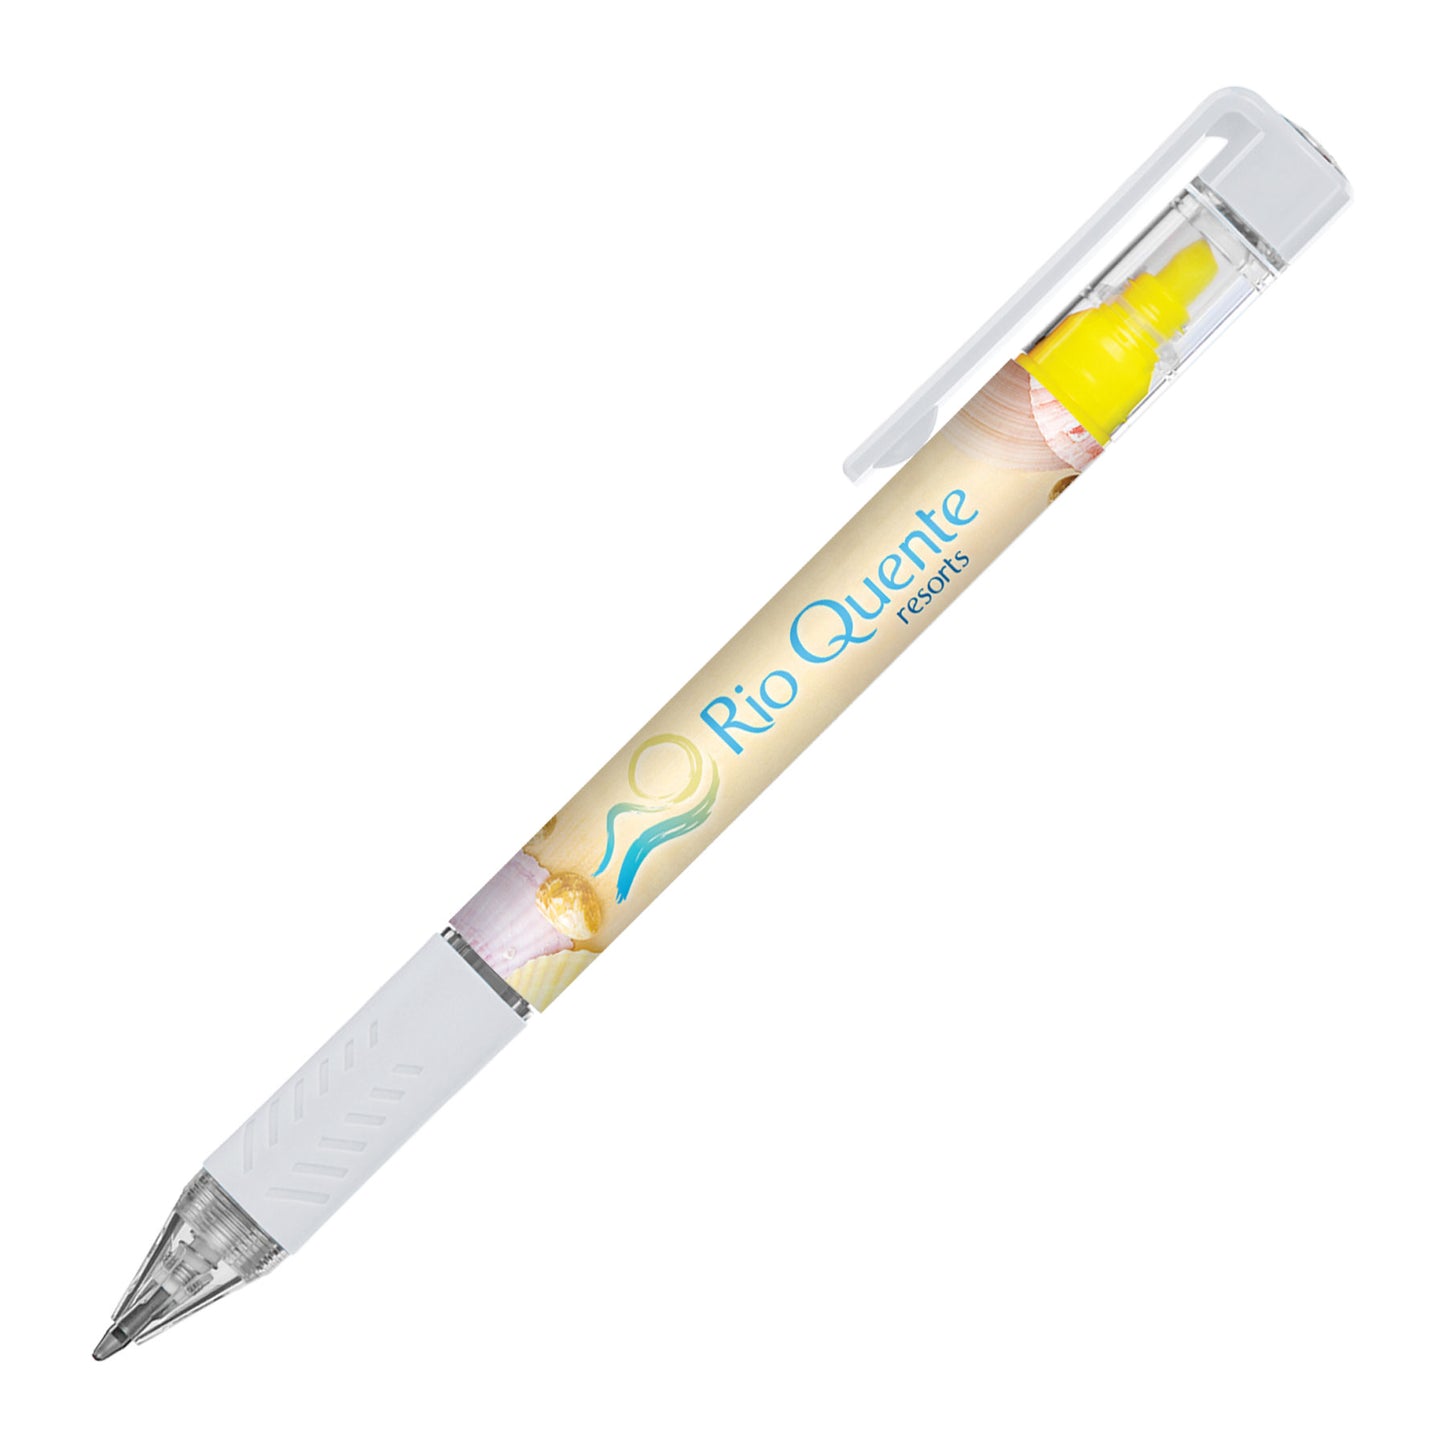 Bergman Bright Highlighter Pen